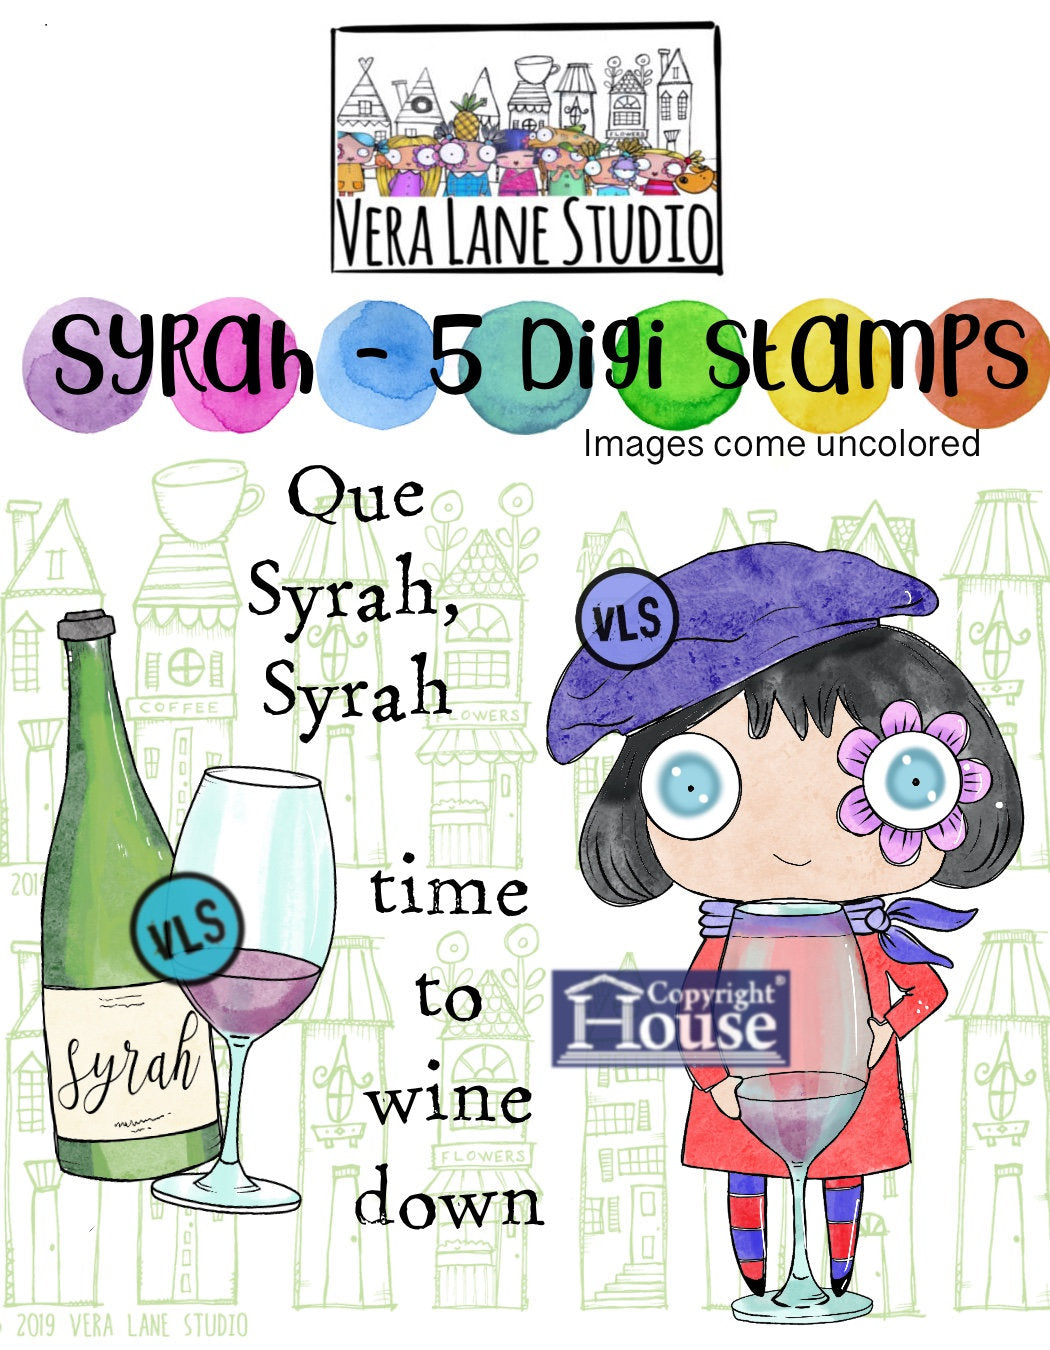 Syrah- 5 Digi stamp bundle in jpg and png files be